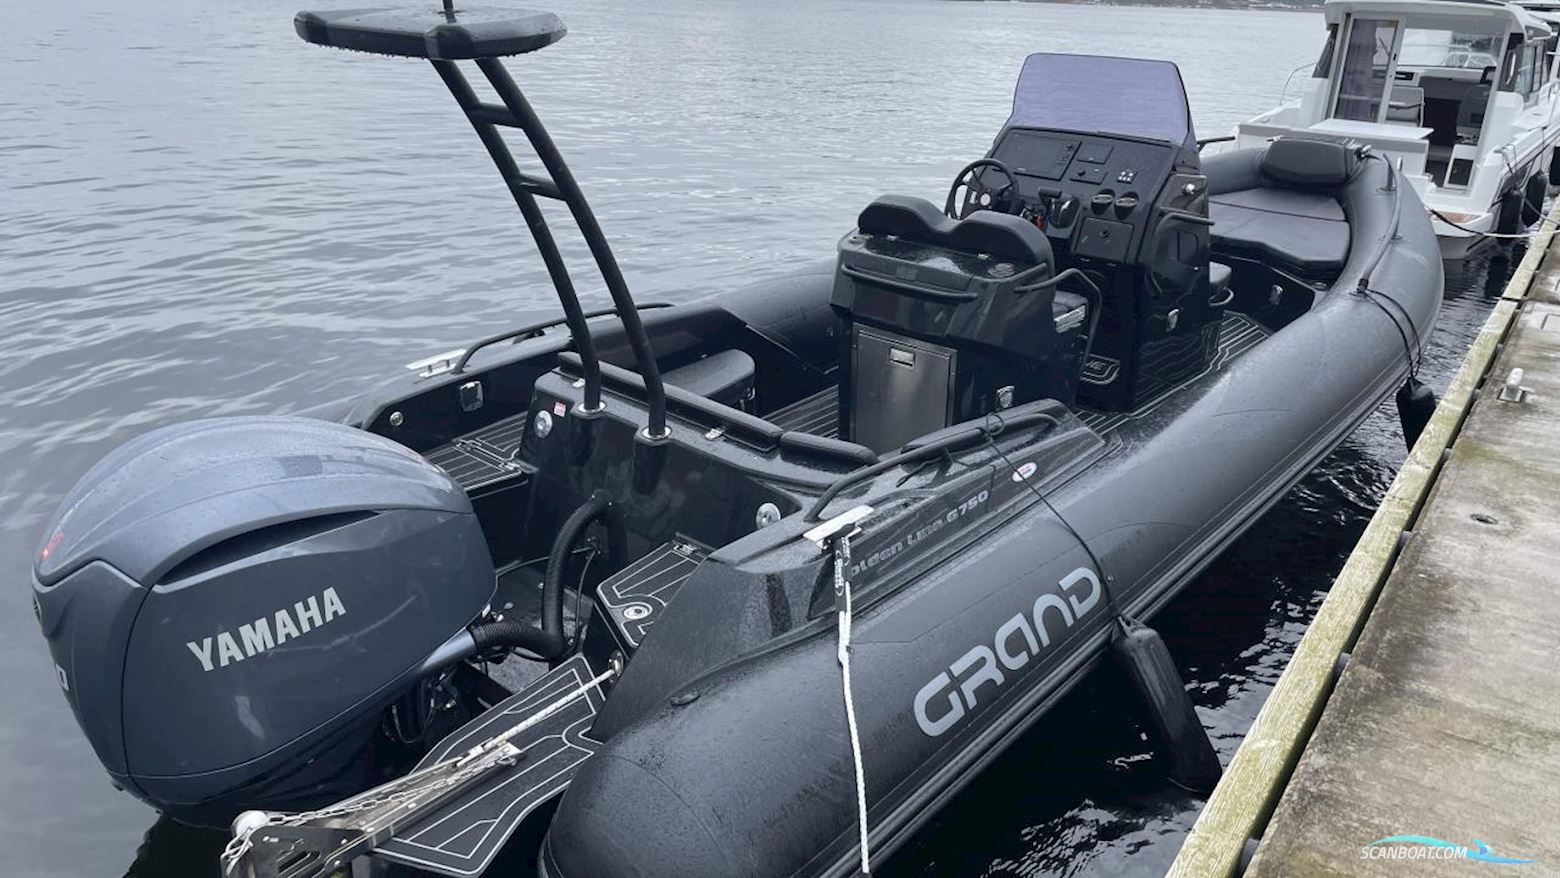 GRAND GOLDEN LINE G750L Motorbåd 2022, med Yamaha motor, Sverige